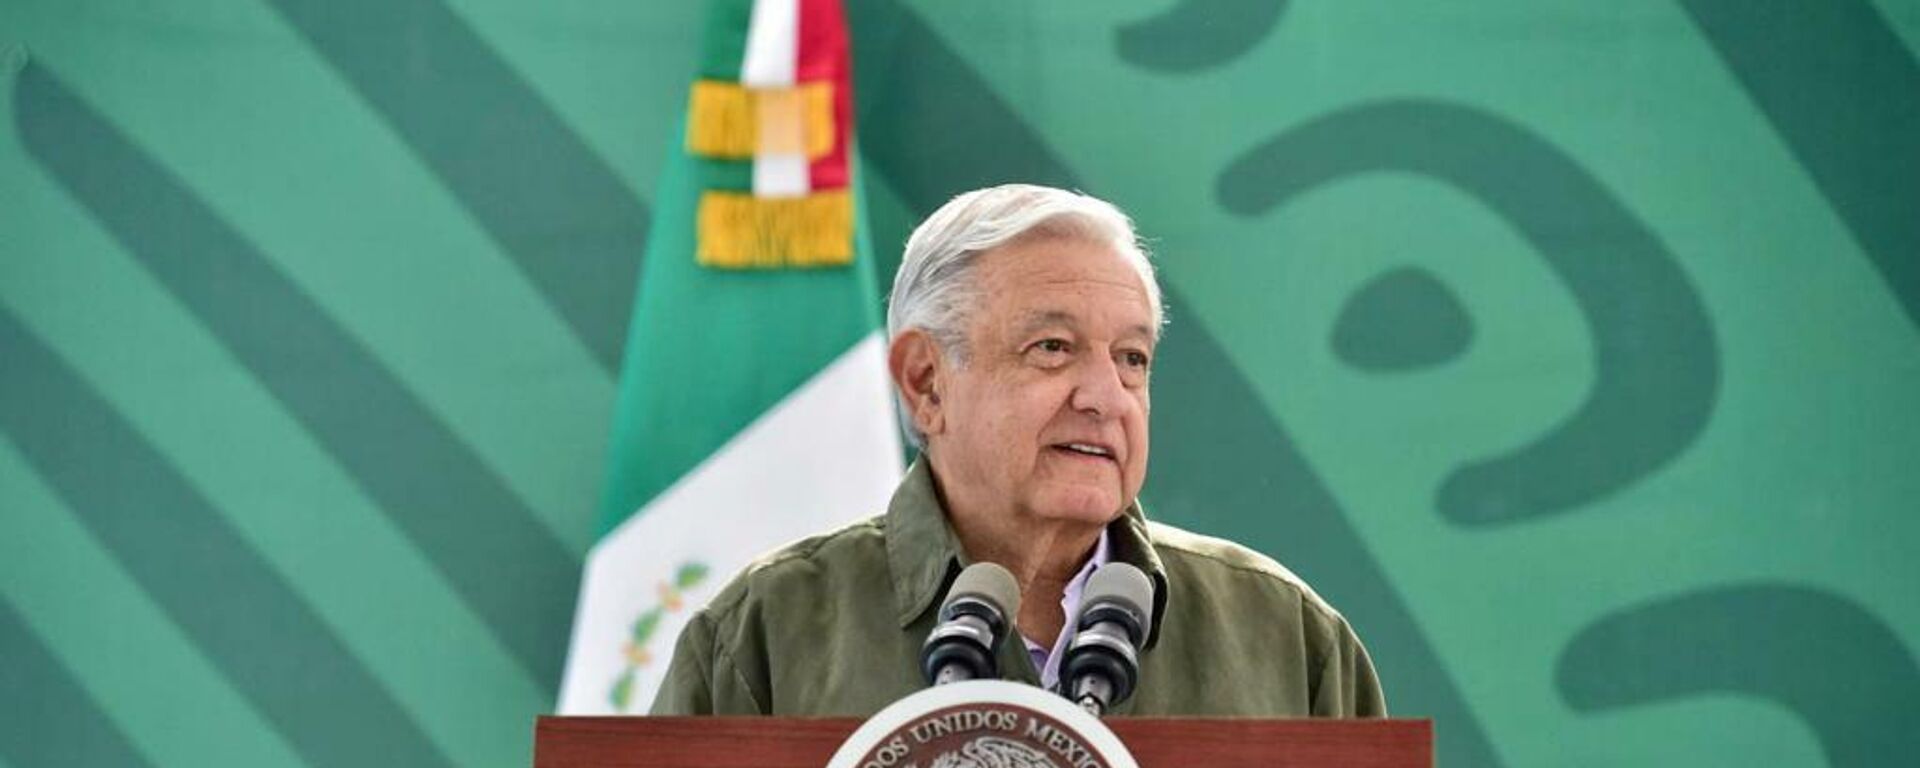 Andrés Manuel López Obrador, presidente de México  - Sputnik Mundo, 1920, 29.11.2021